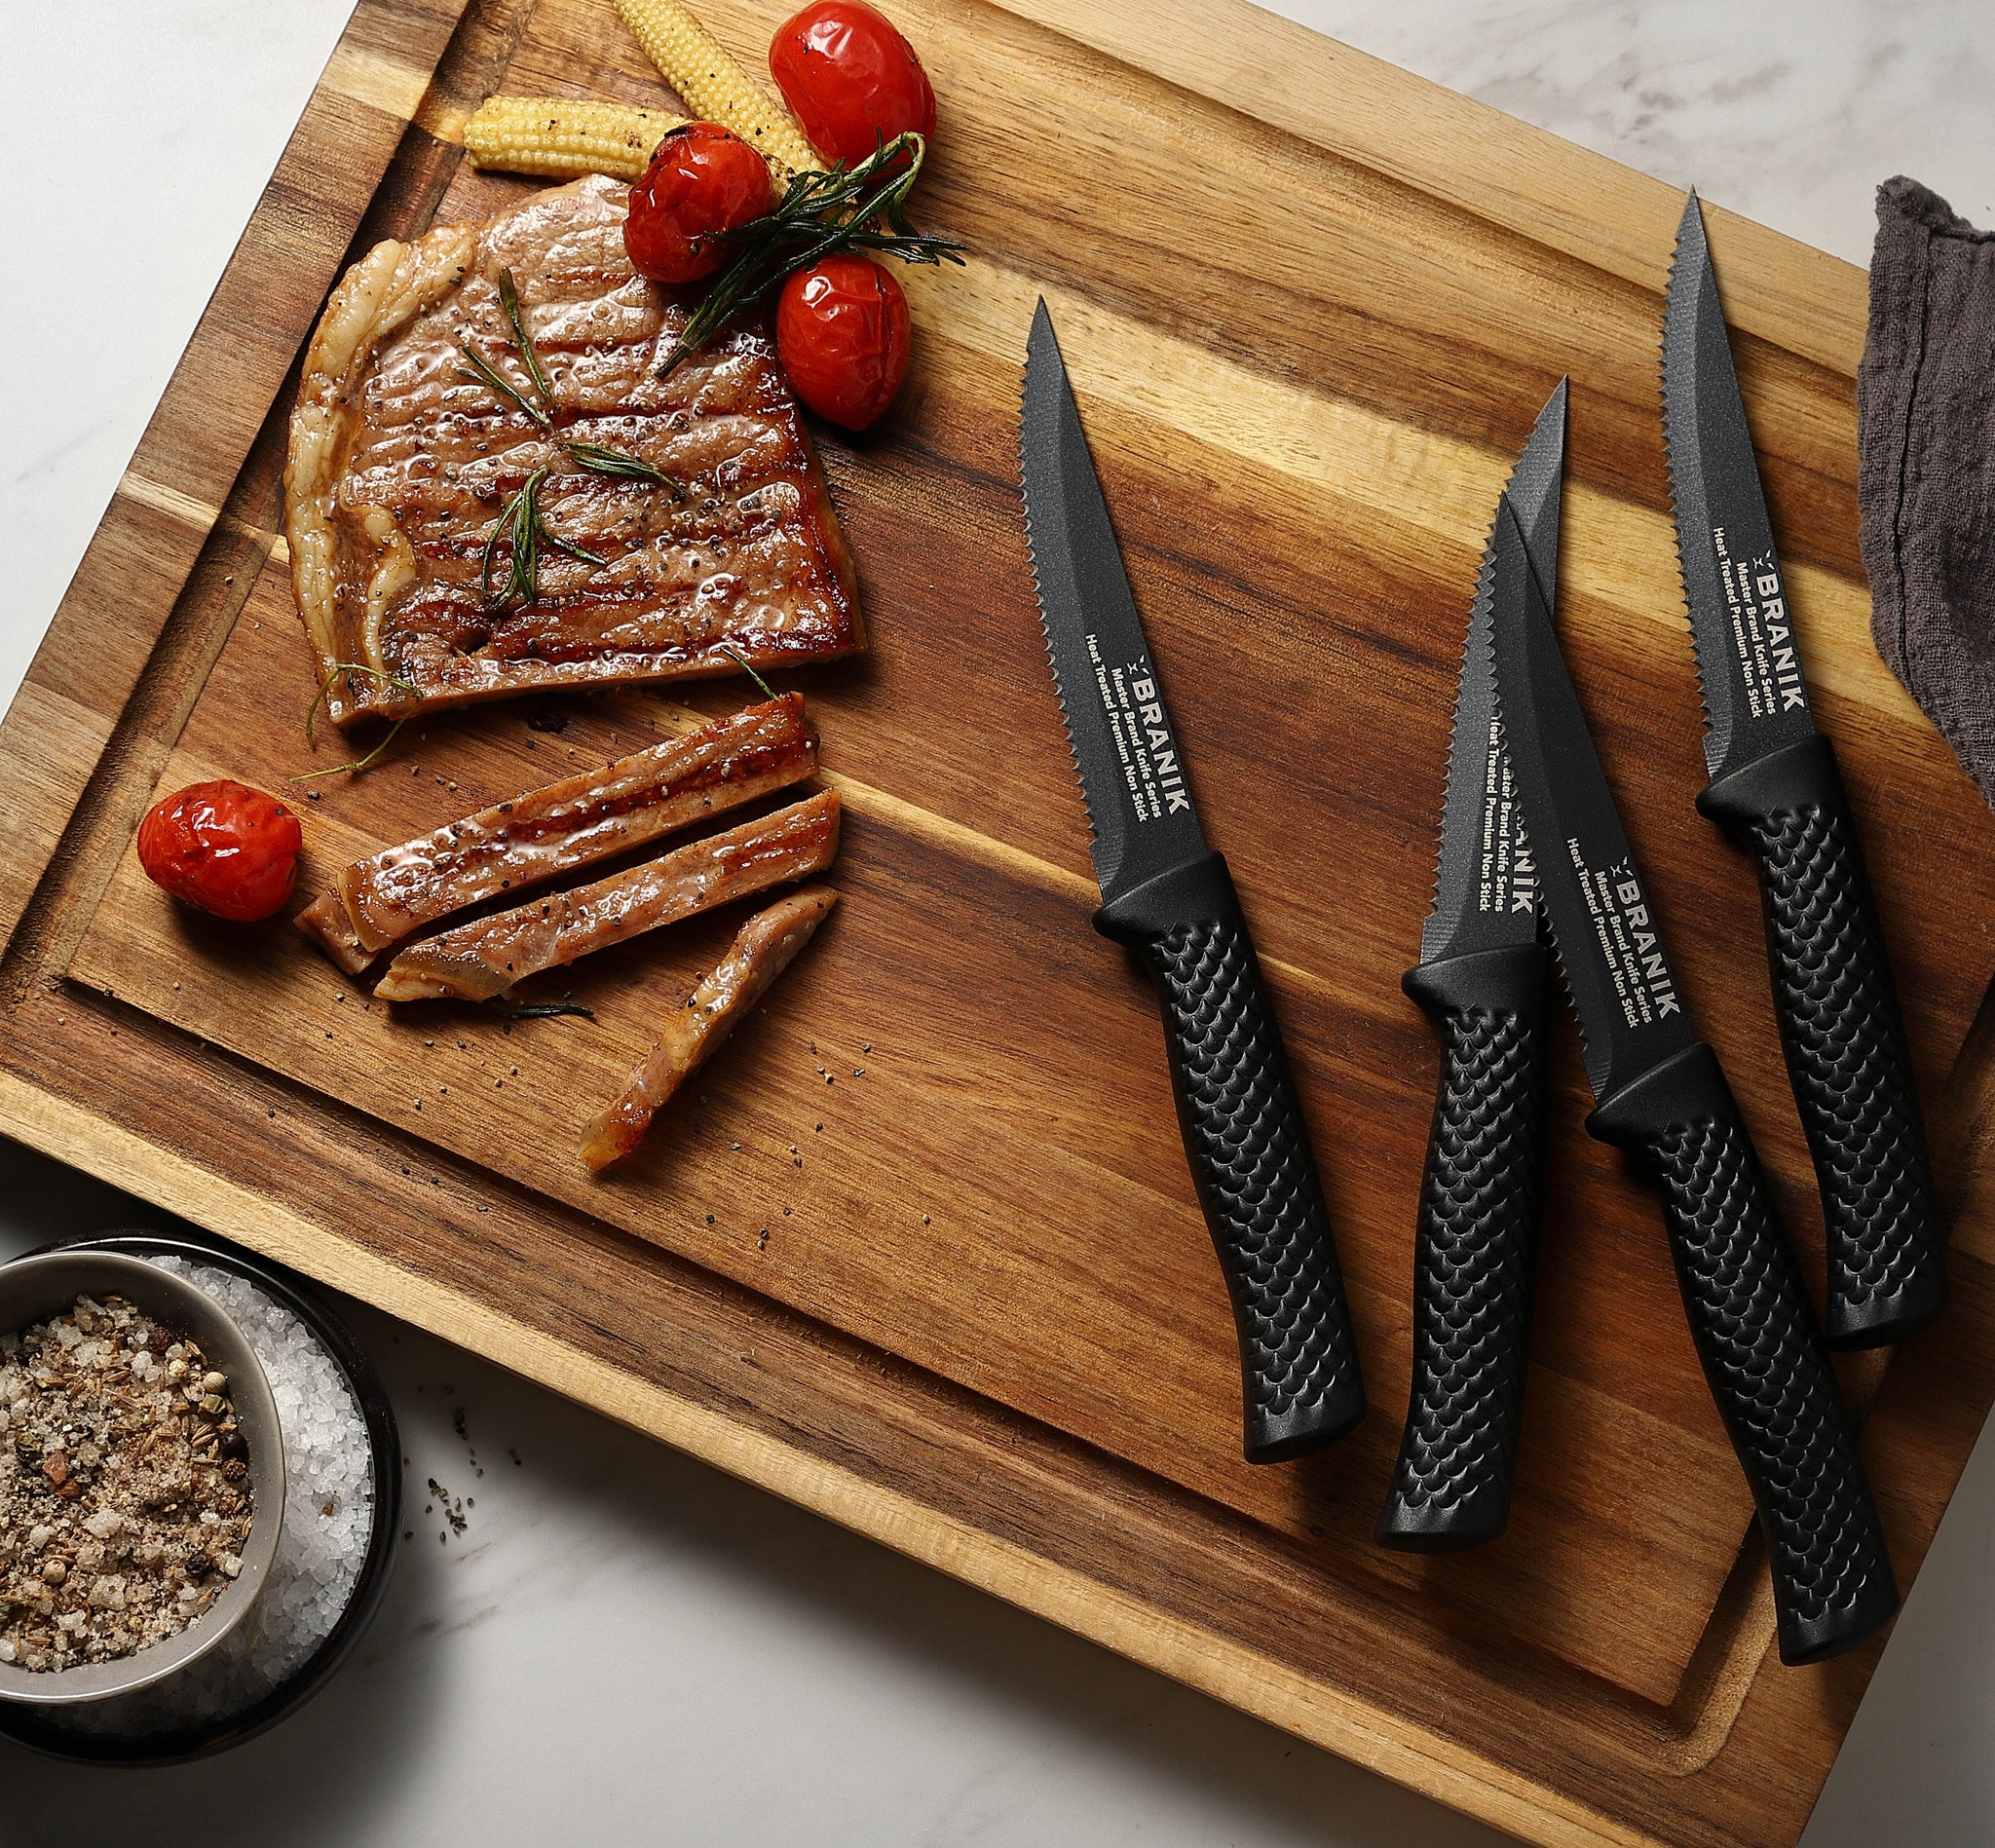 BRANIK 6Pc Black Kitchen Knife Set, Premium German UK